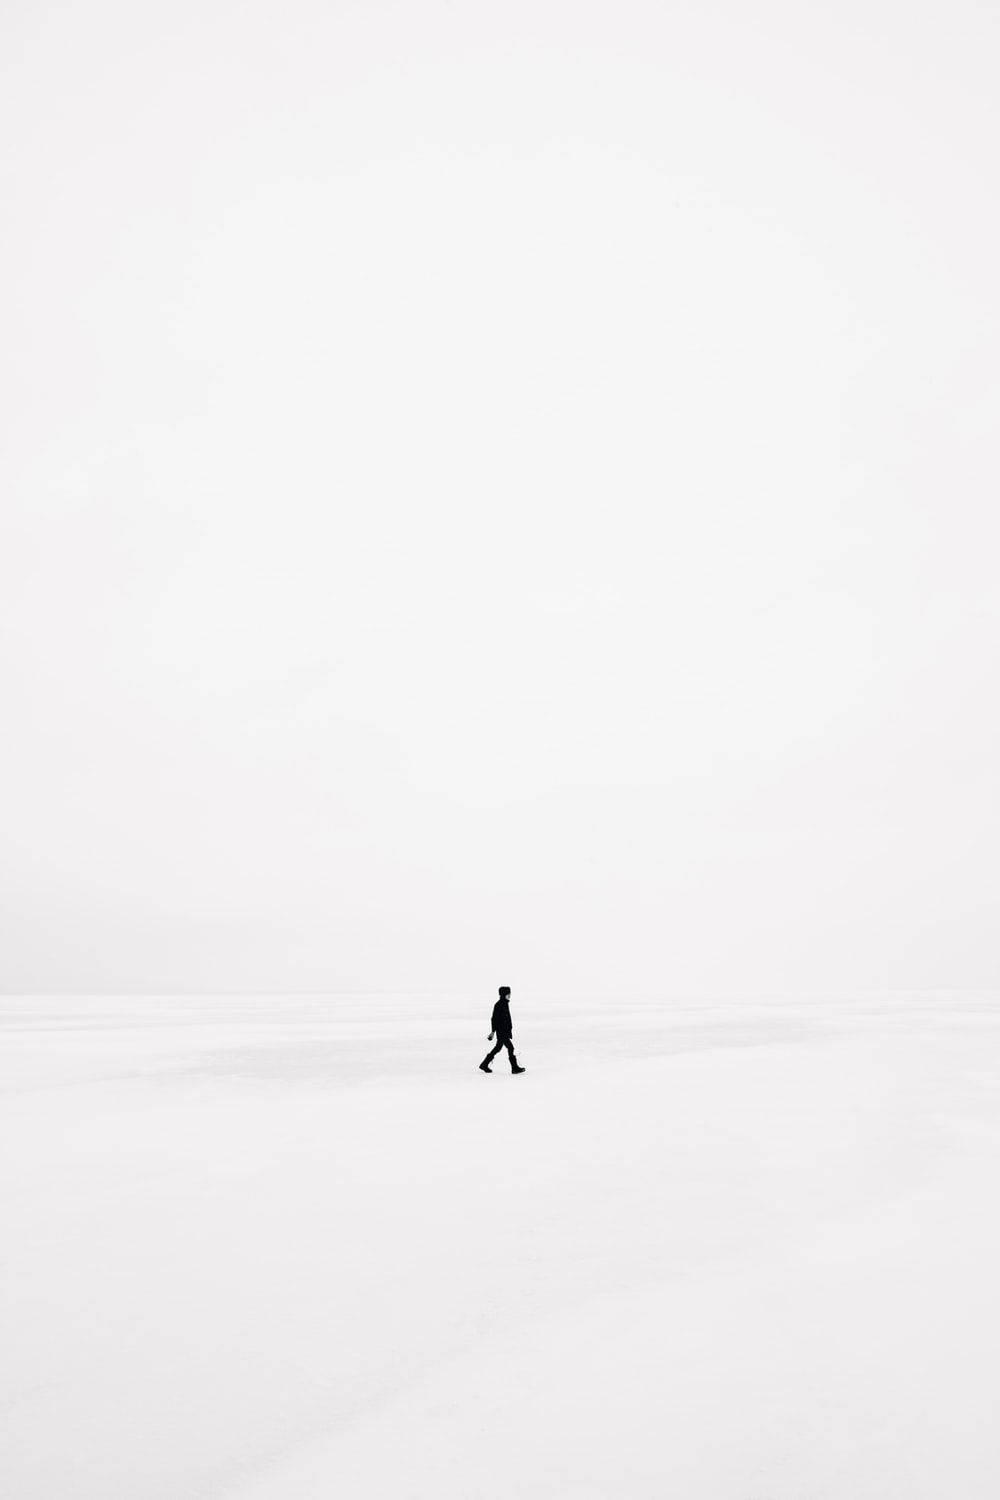 Siluetade Hombre Caminando En Pantalla Completa De Color Blanco. Fondo de pantalla